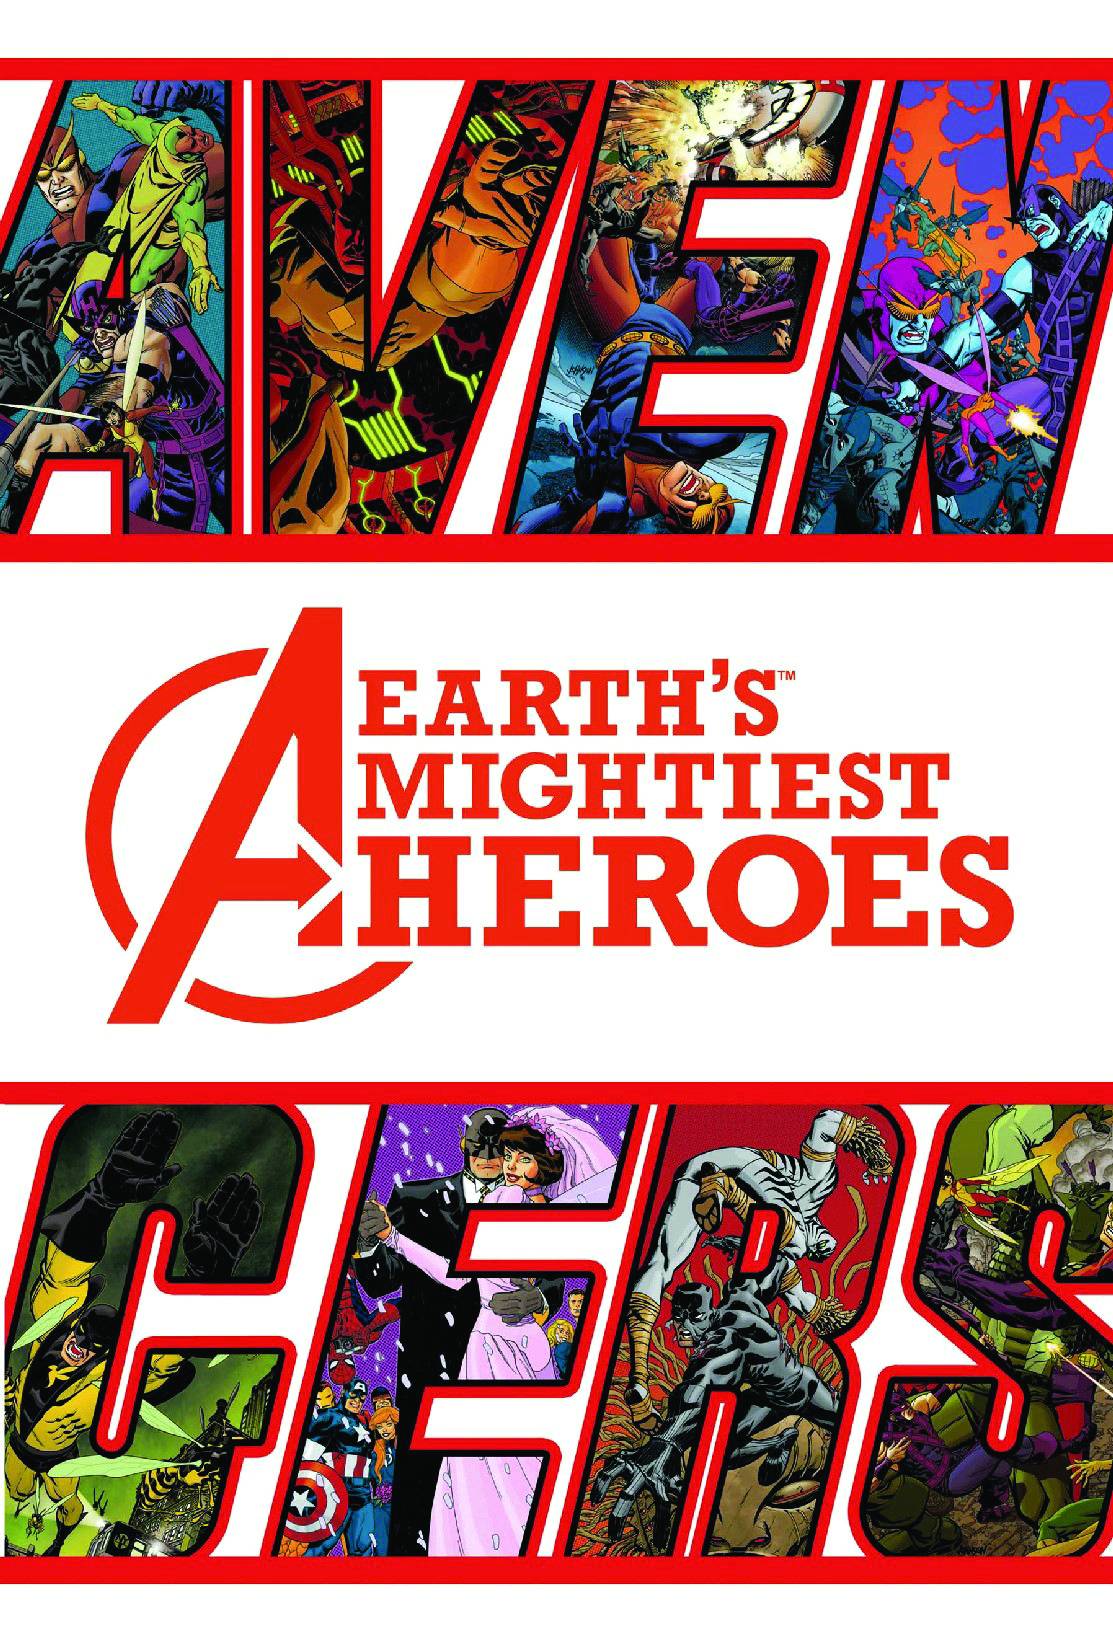 Avengers Earths Mightiest Heroes Hardcover Volume 2